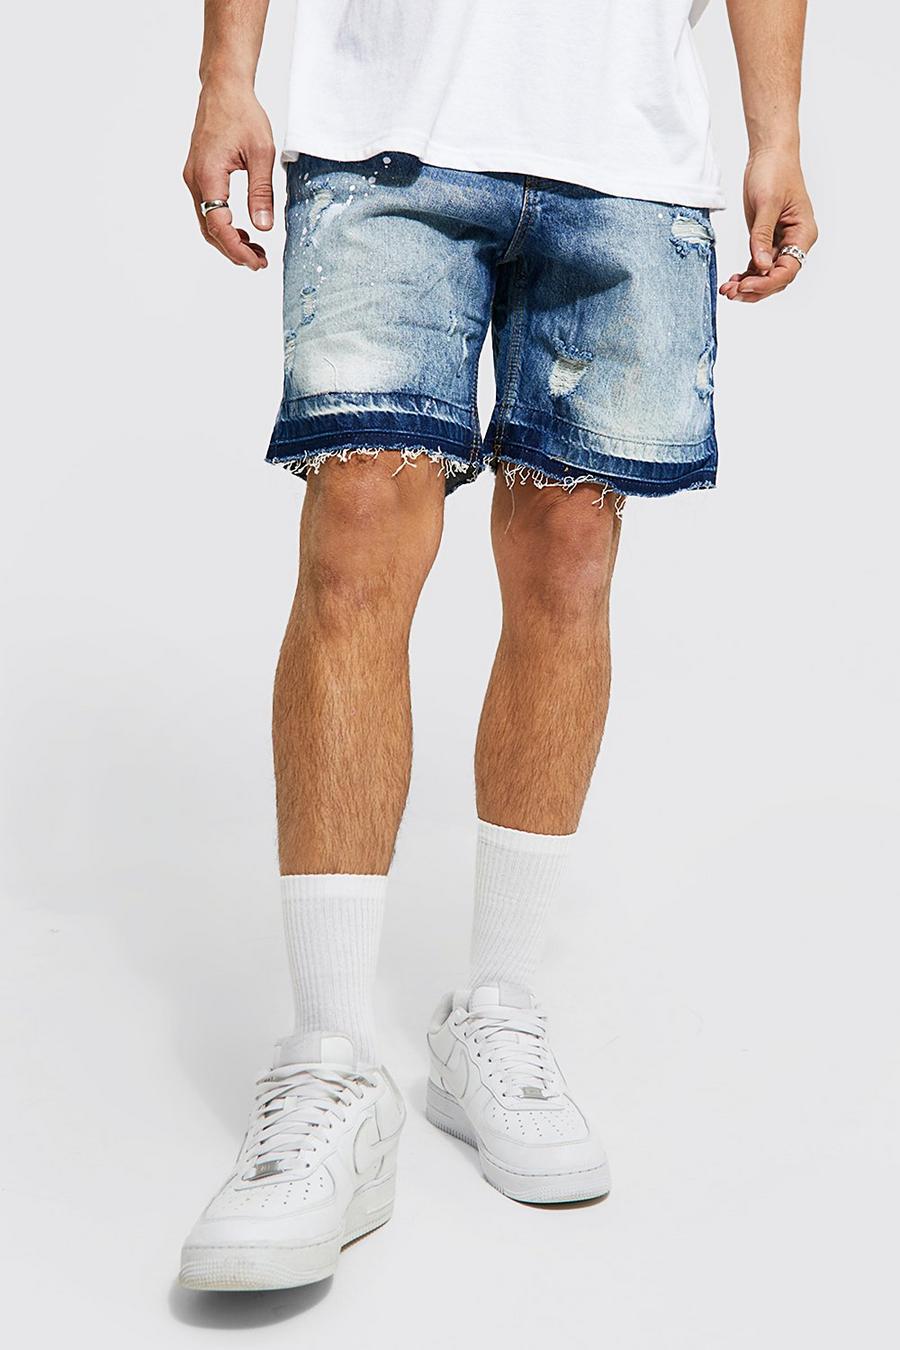 Pantalones cortos para hombre | Compra cortos para | boohoo